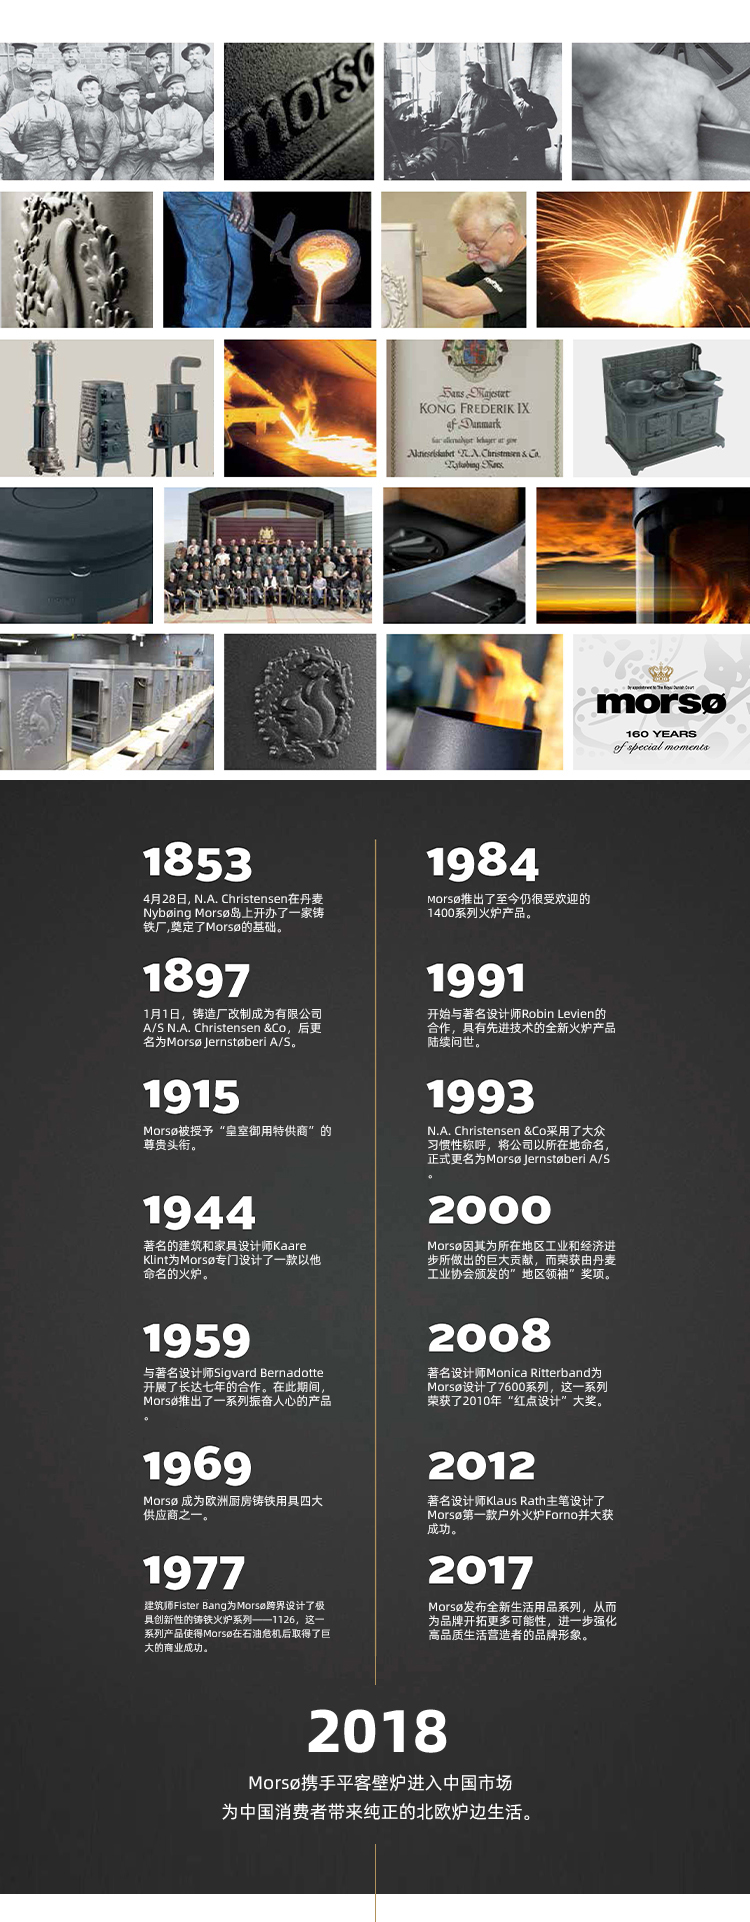 丹麦燃木壁炉品牌-Morsø 7600系列-3款可选.jpg